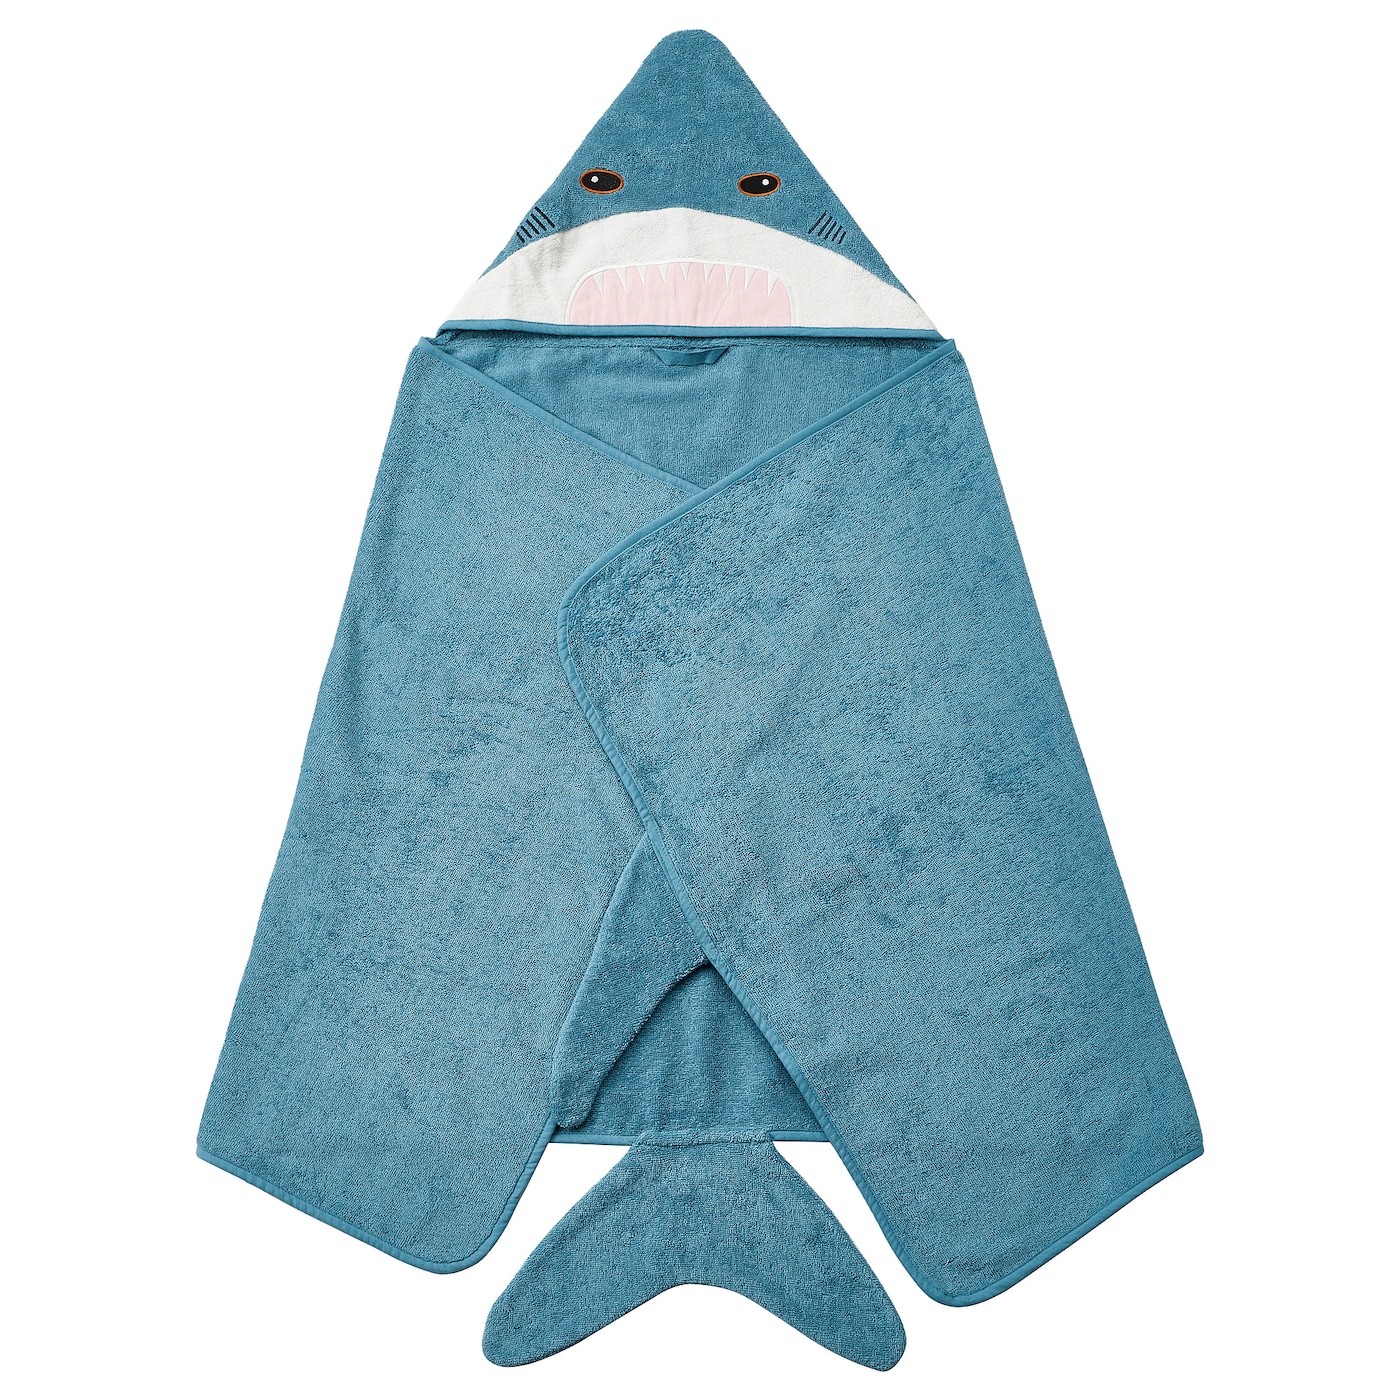 BLÅVINGAD БЛОВИНГАД Полотенце с капюшоном, в форме акулы/серо-голубой, 70x140 см IKEA детское успокаивающее полотенце из полипропилена и хлопка